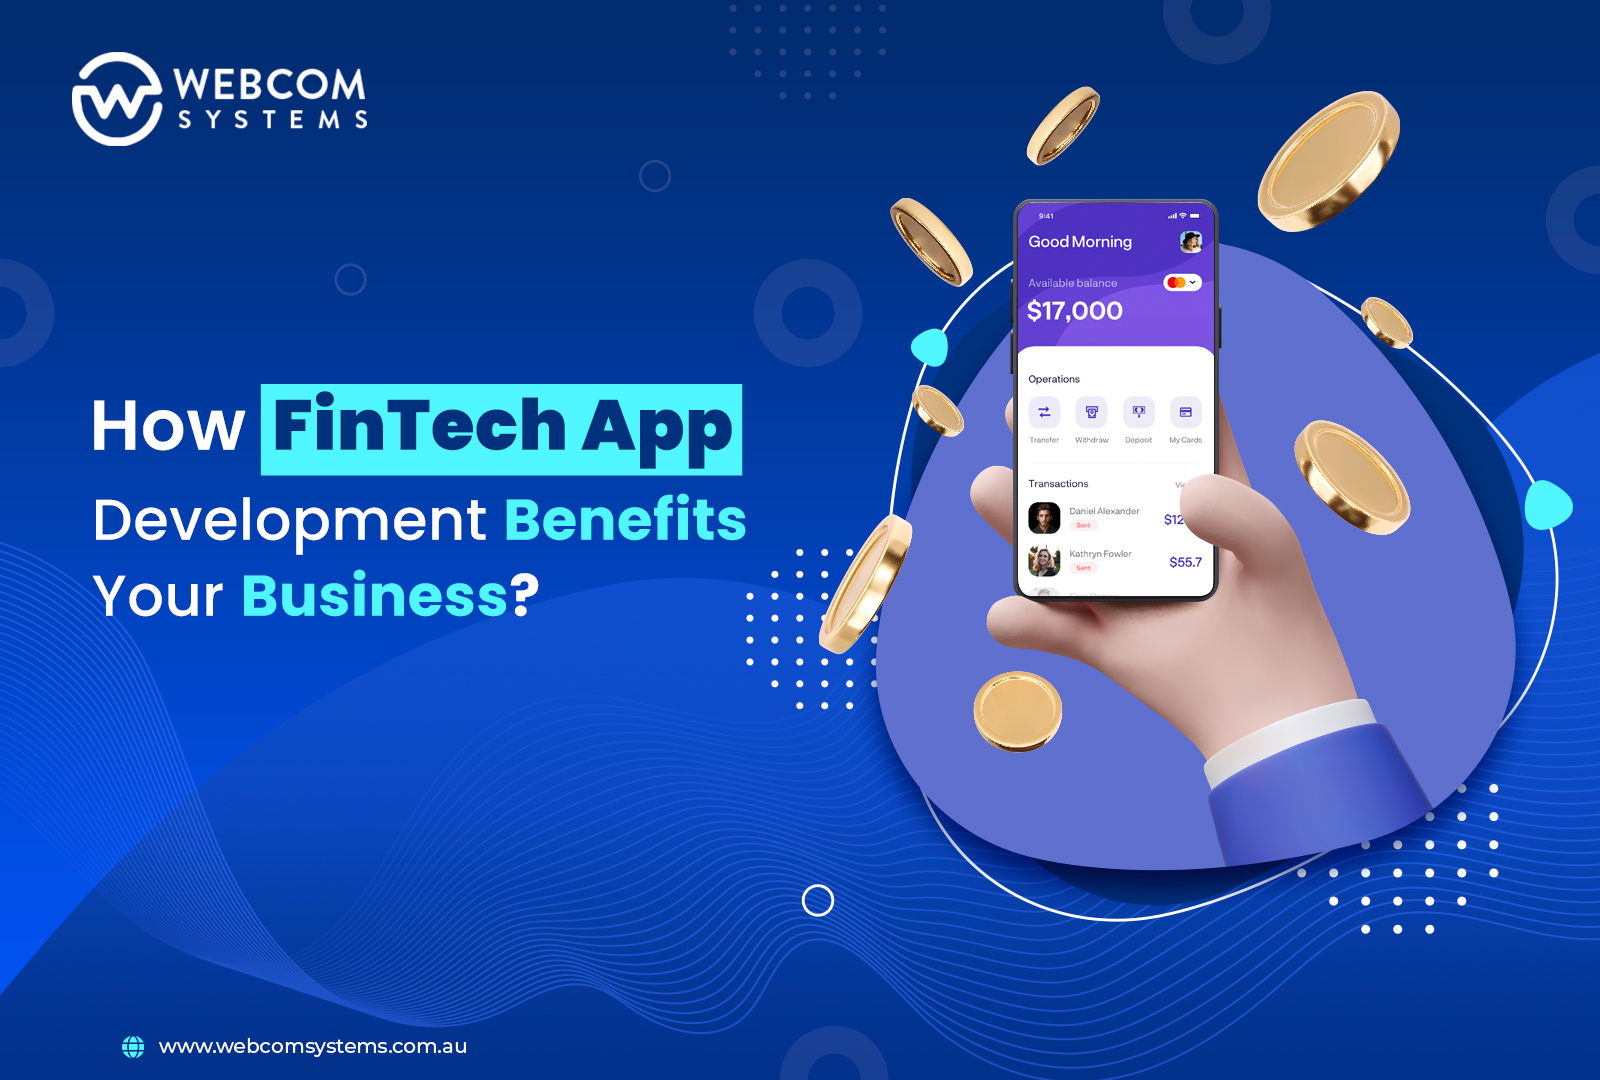 Fintech App Development Benefits